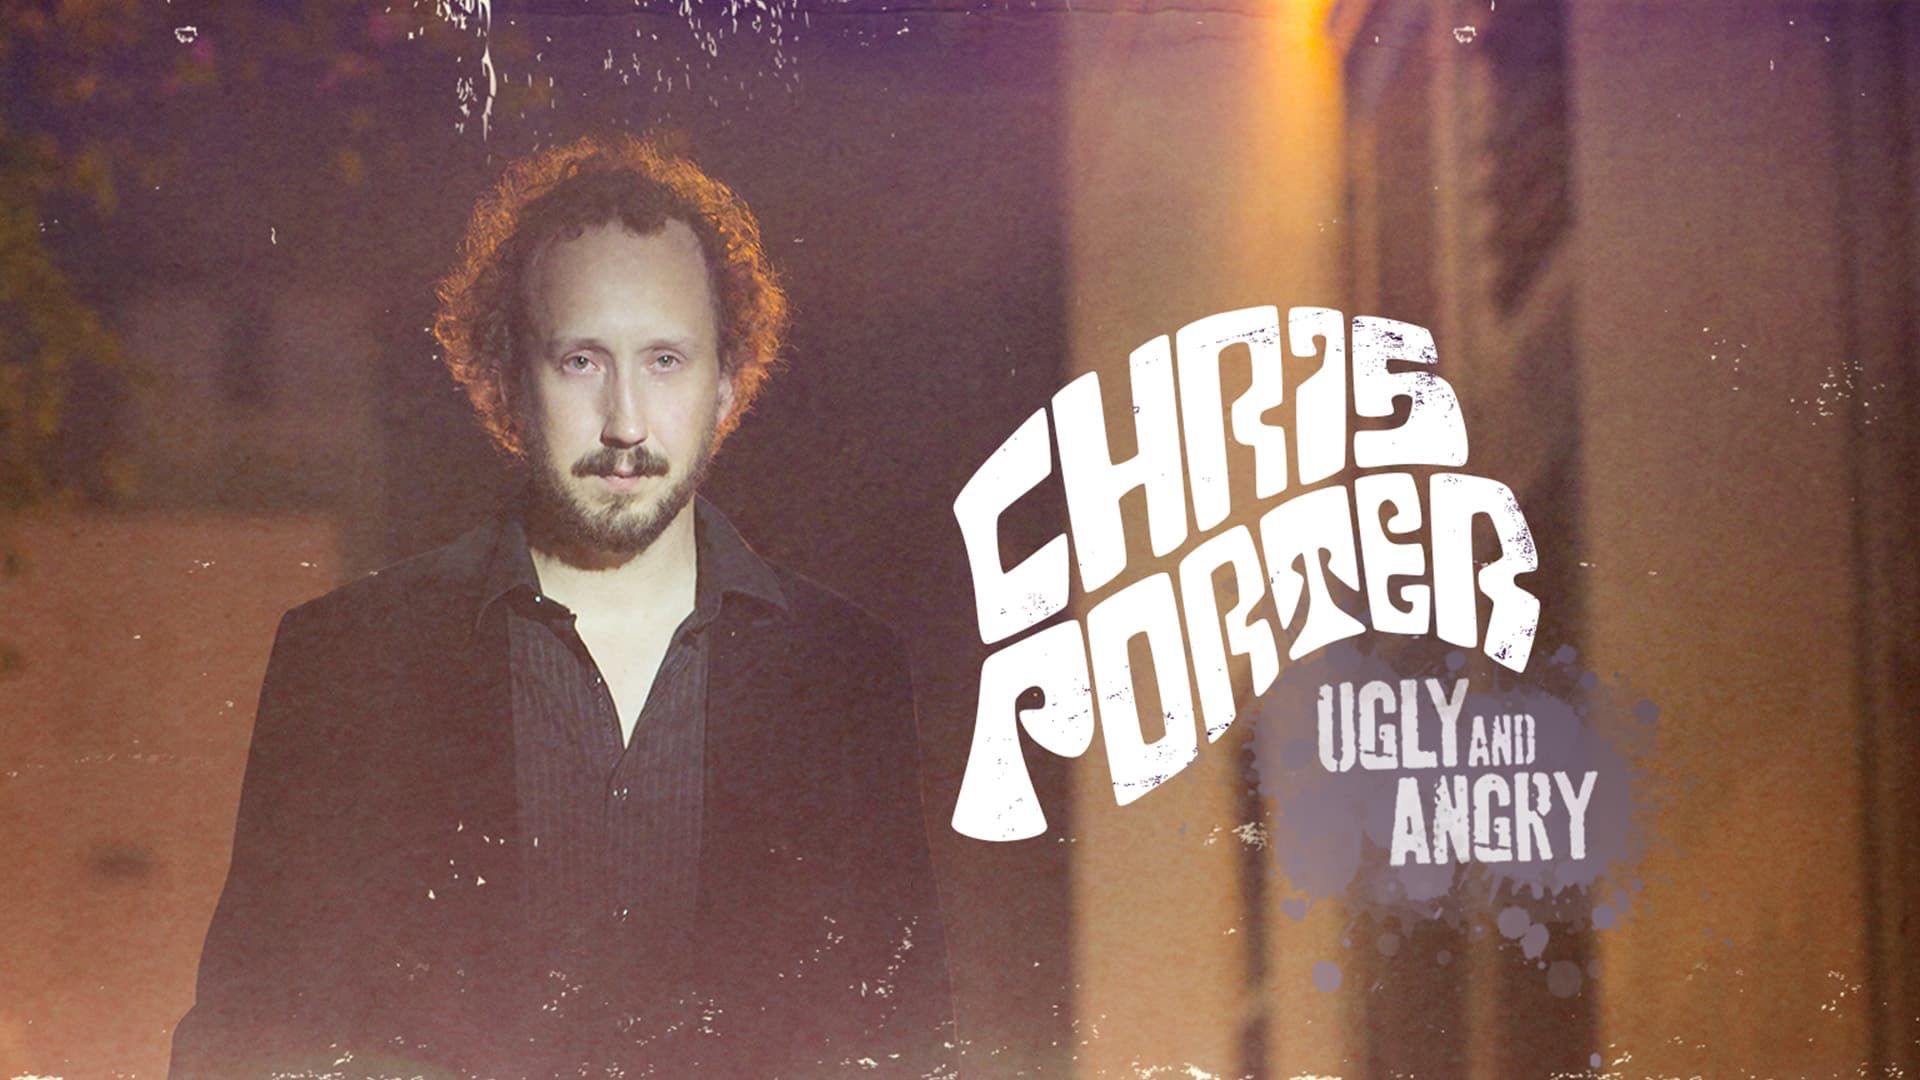 Chris Porter: Ugly and Angry Backdrop